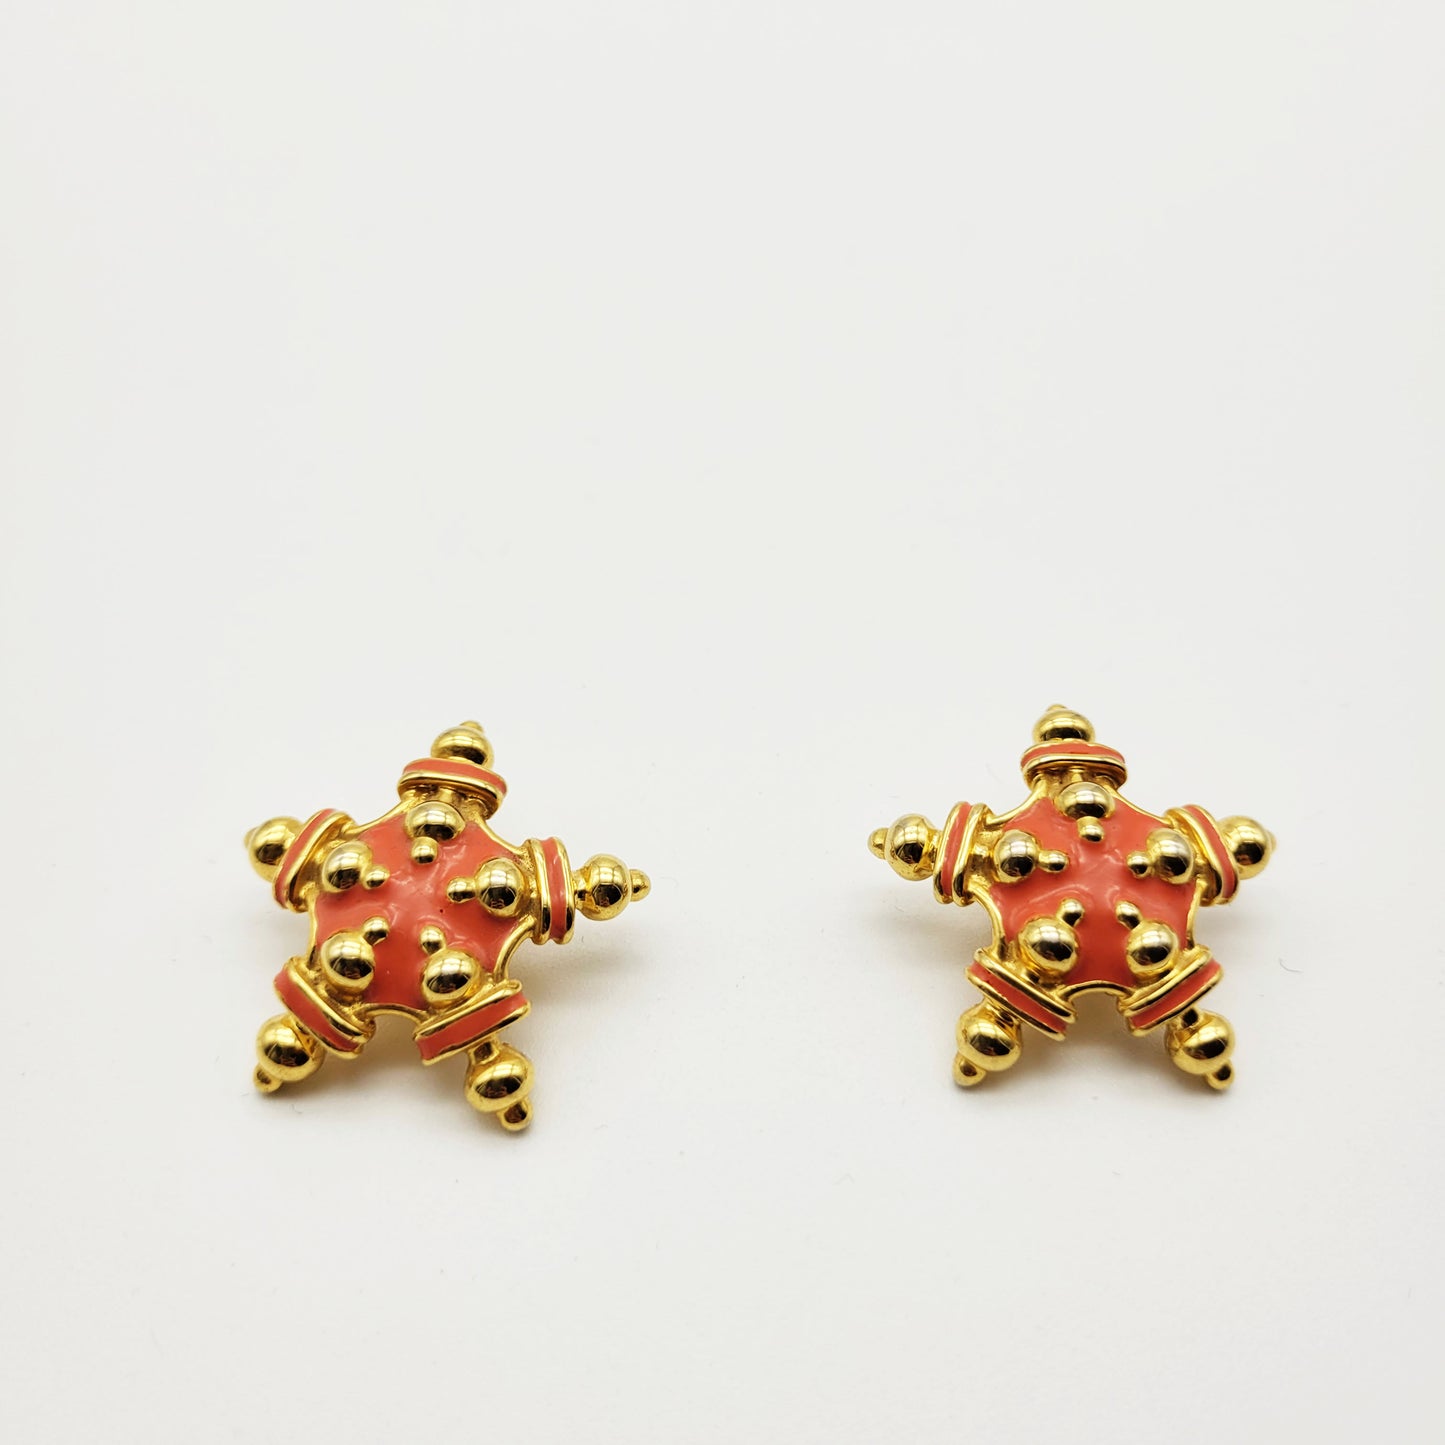 Vintage star earrings